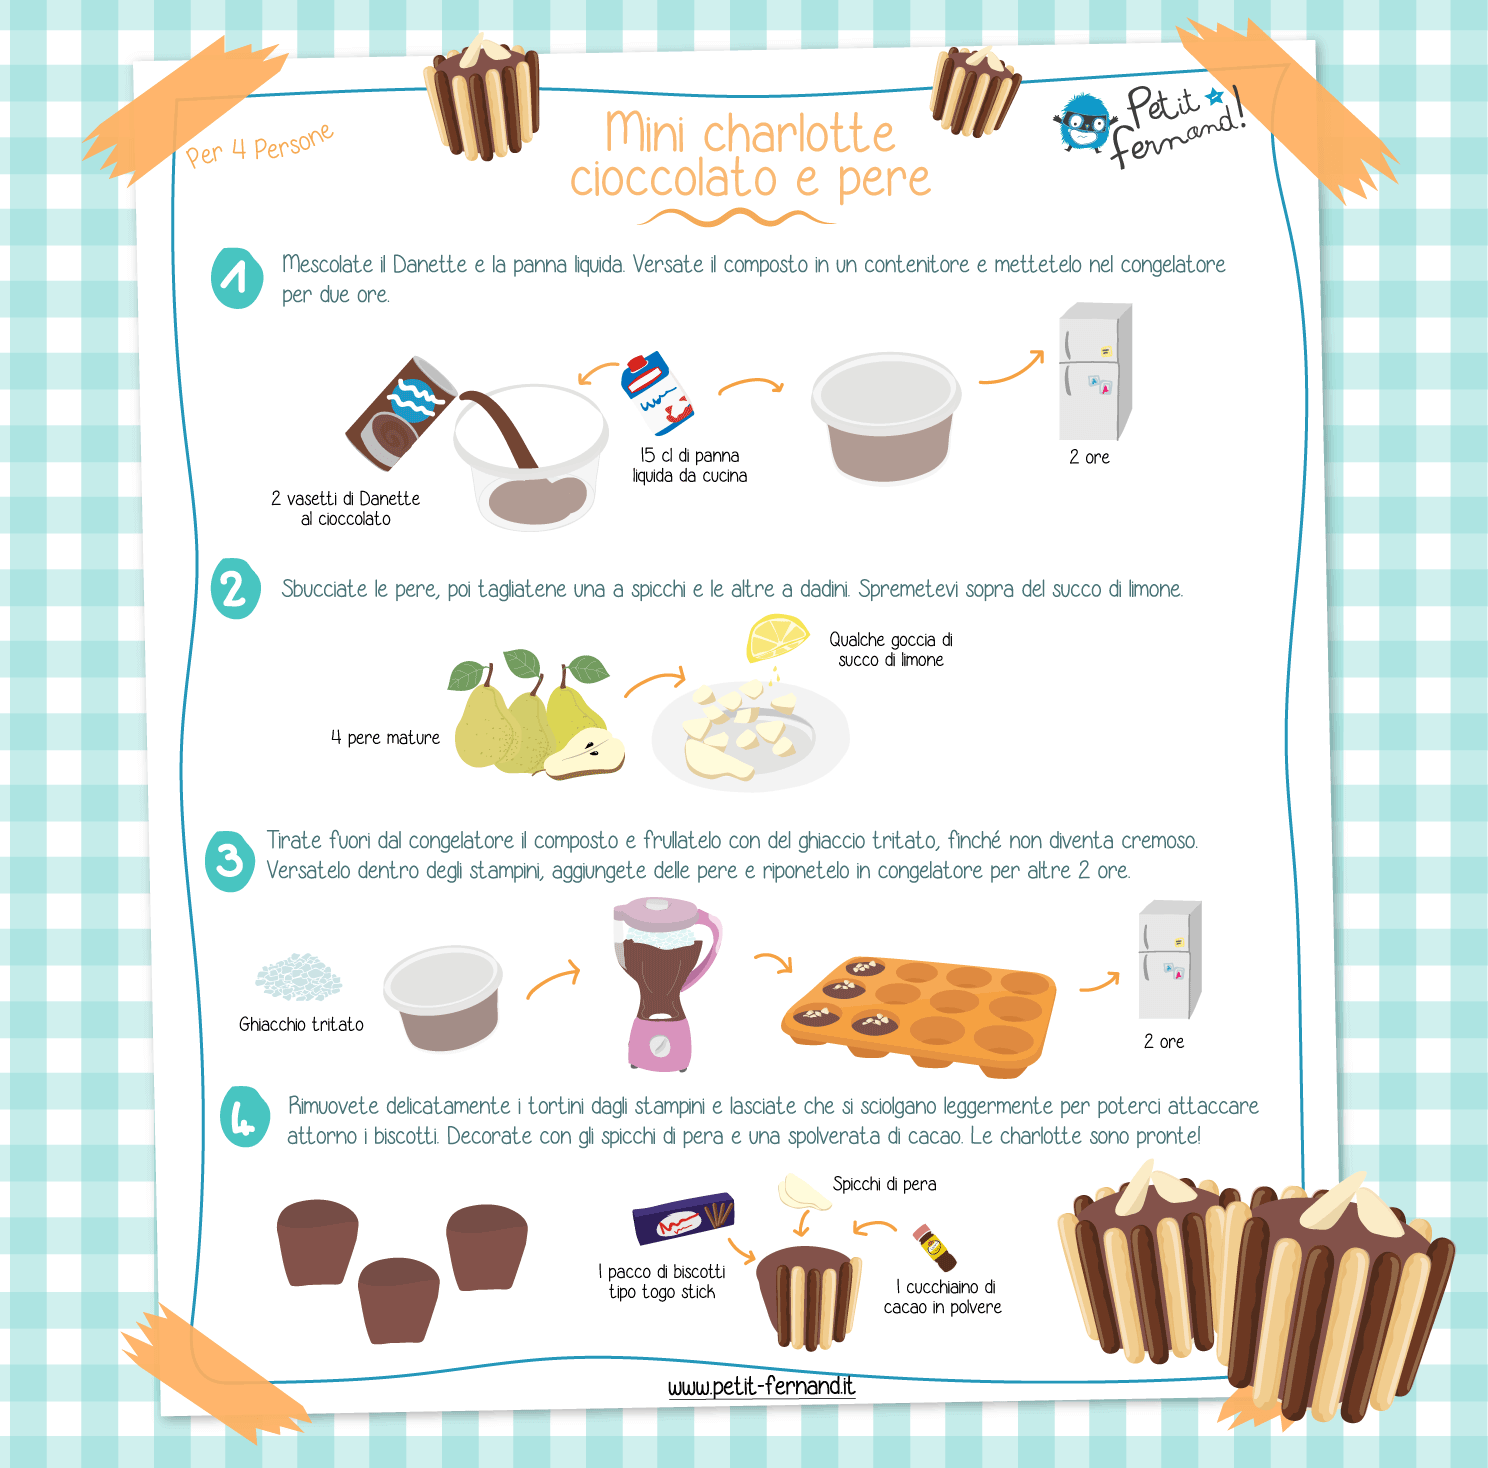 Scoprite questa ricetta per preparare delle super golose charlotte cioccolato e pere!